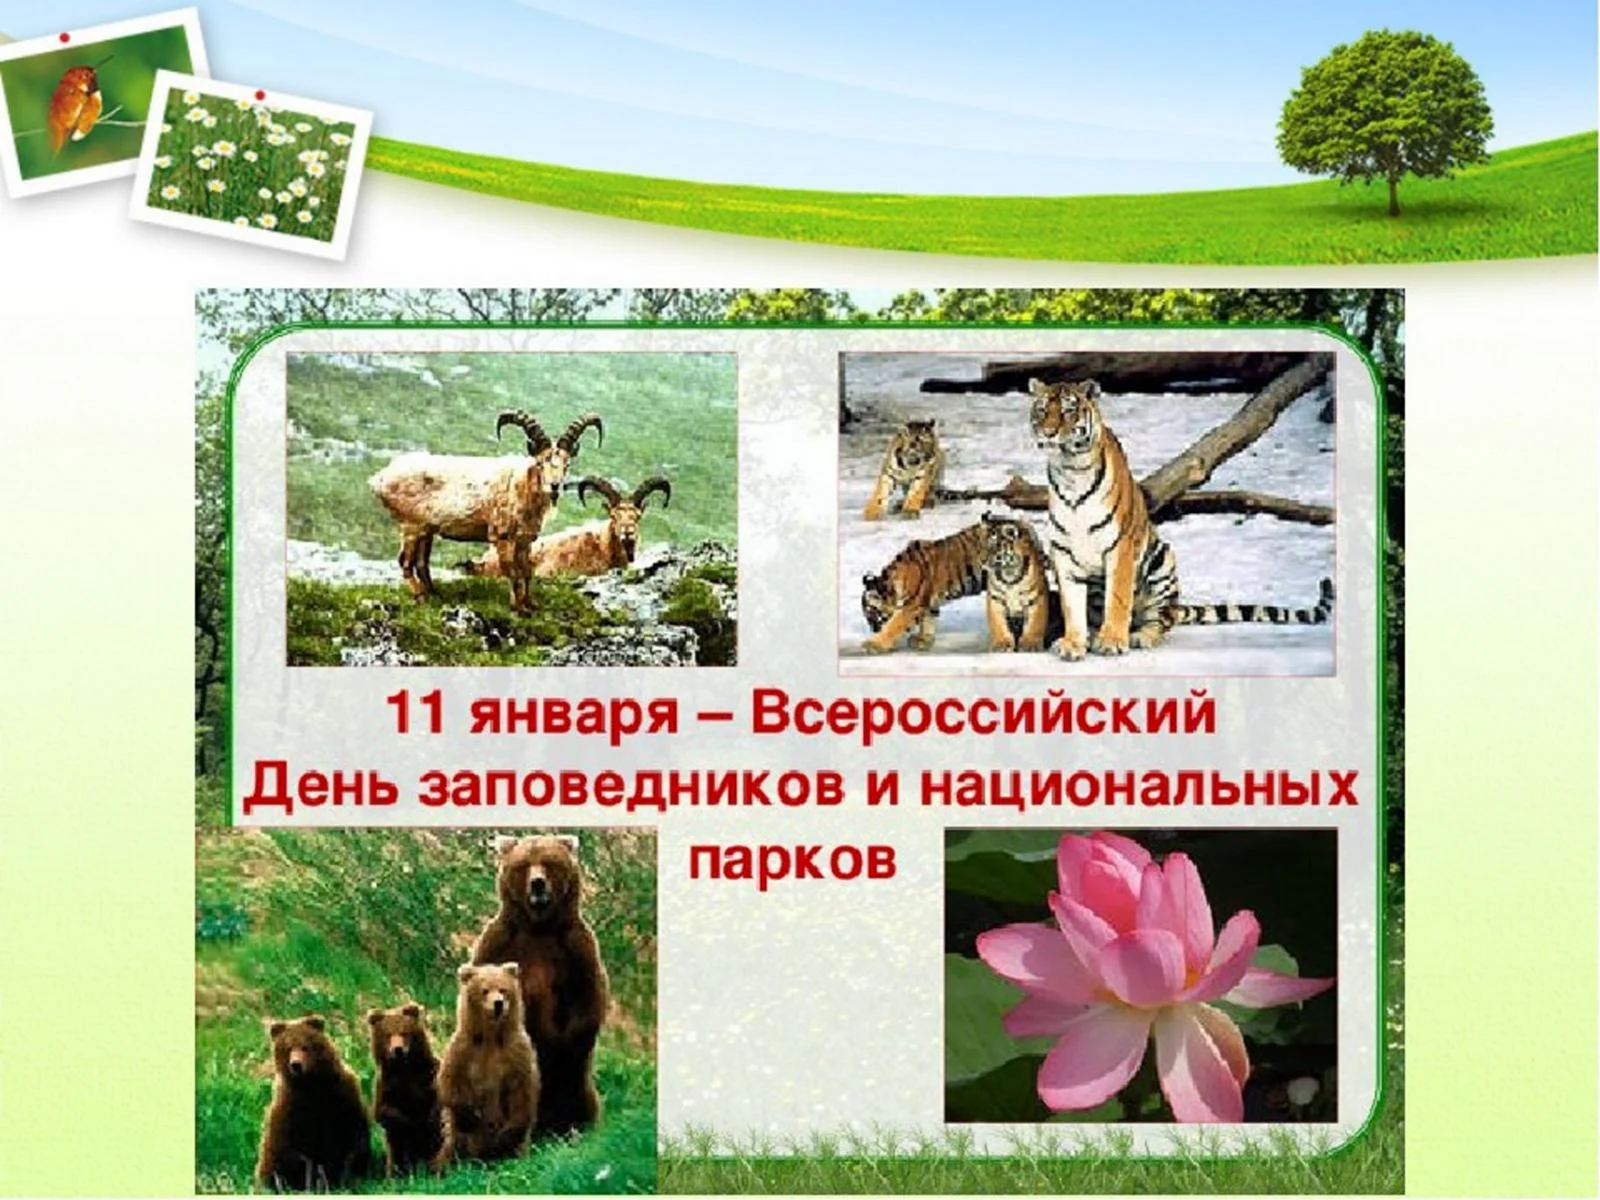 11 Января Всероссийский день заповедников и национальных парков